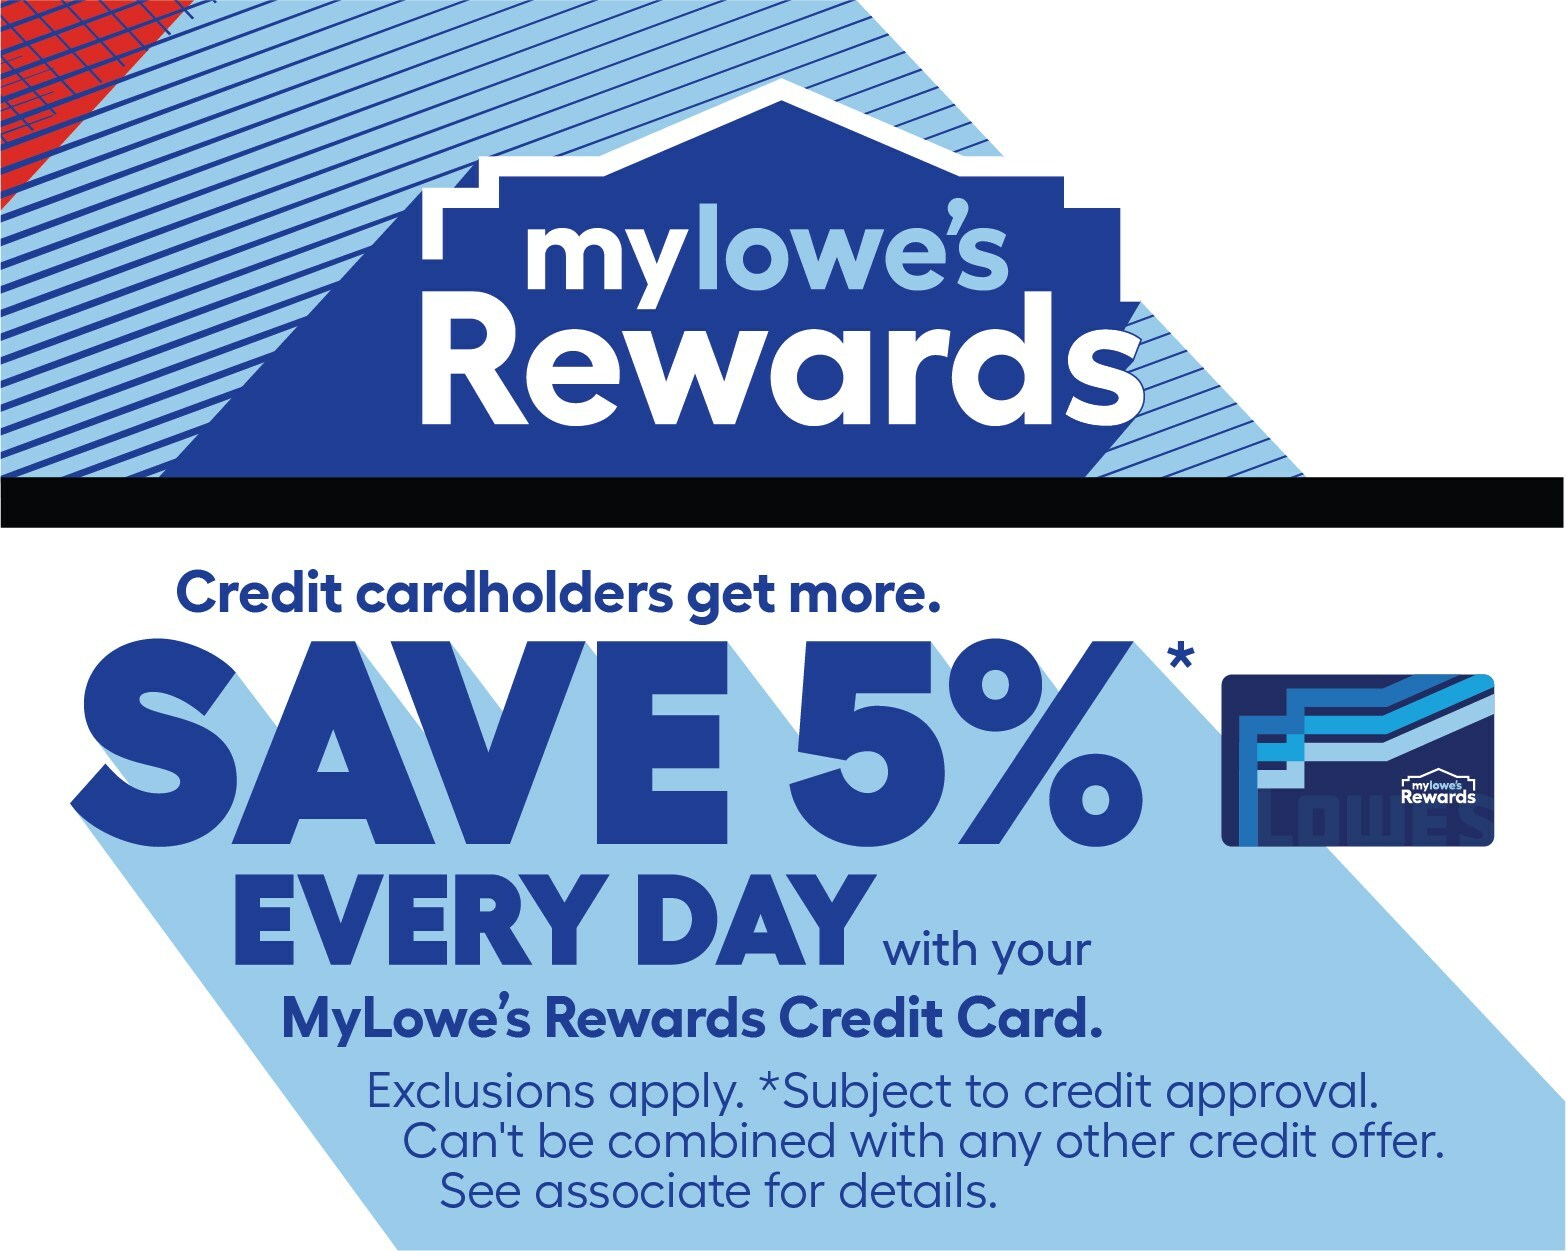 MyLowe's Rewards Loyalty Program